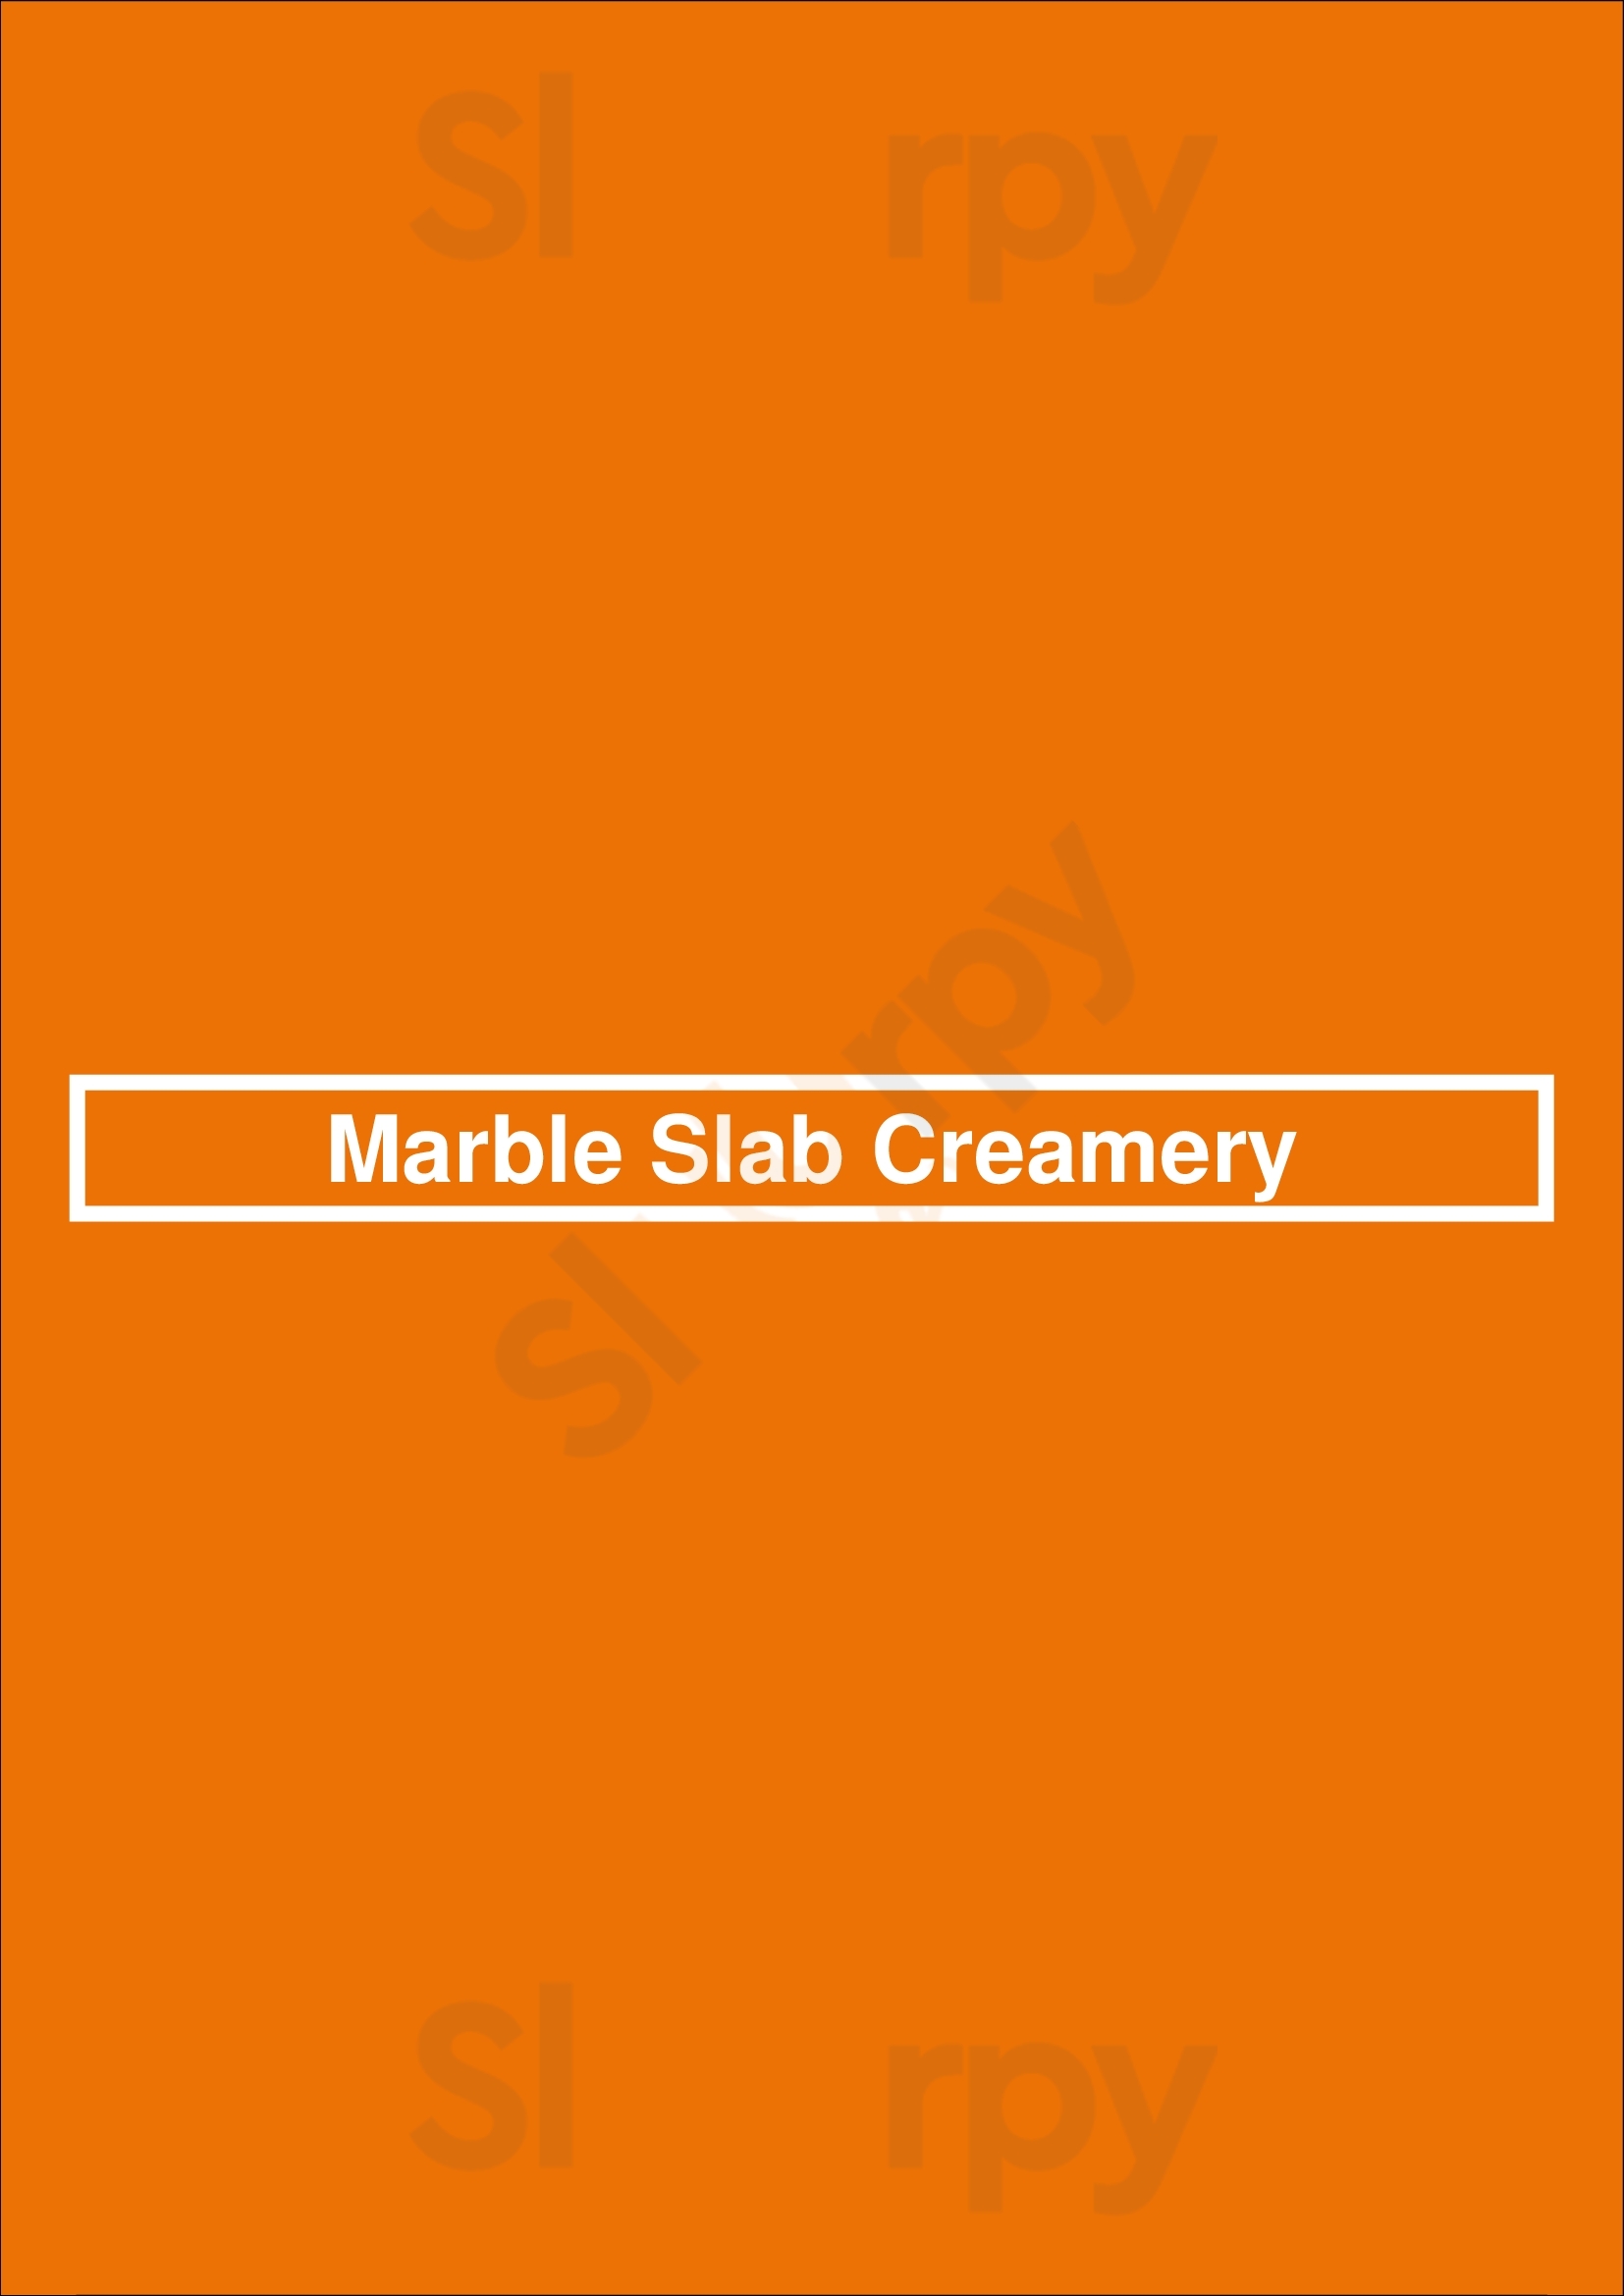 Marble Slab Creamery Houston Menu - 1